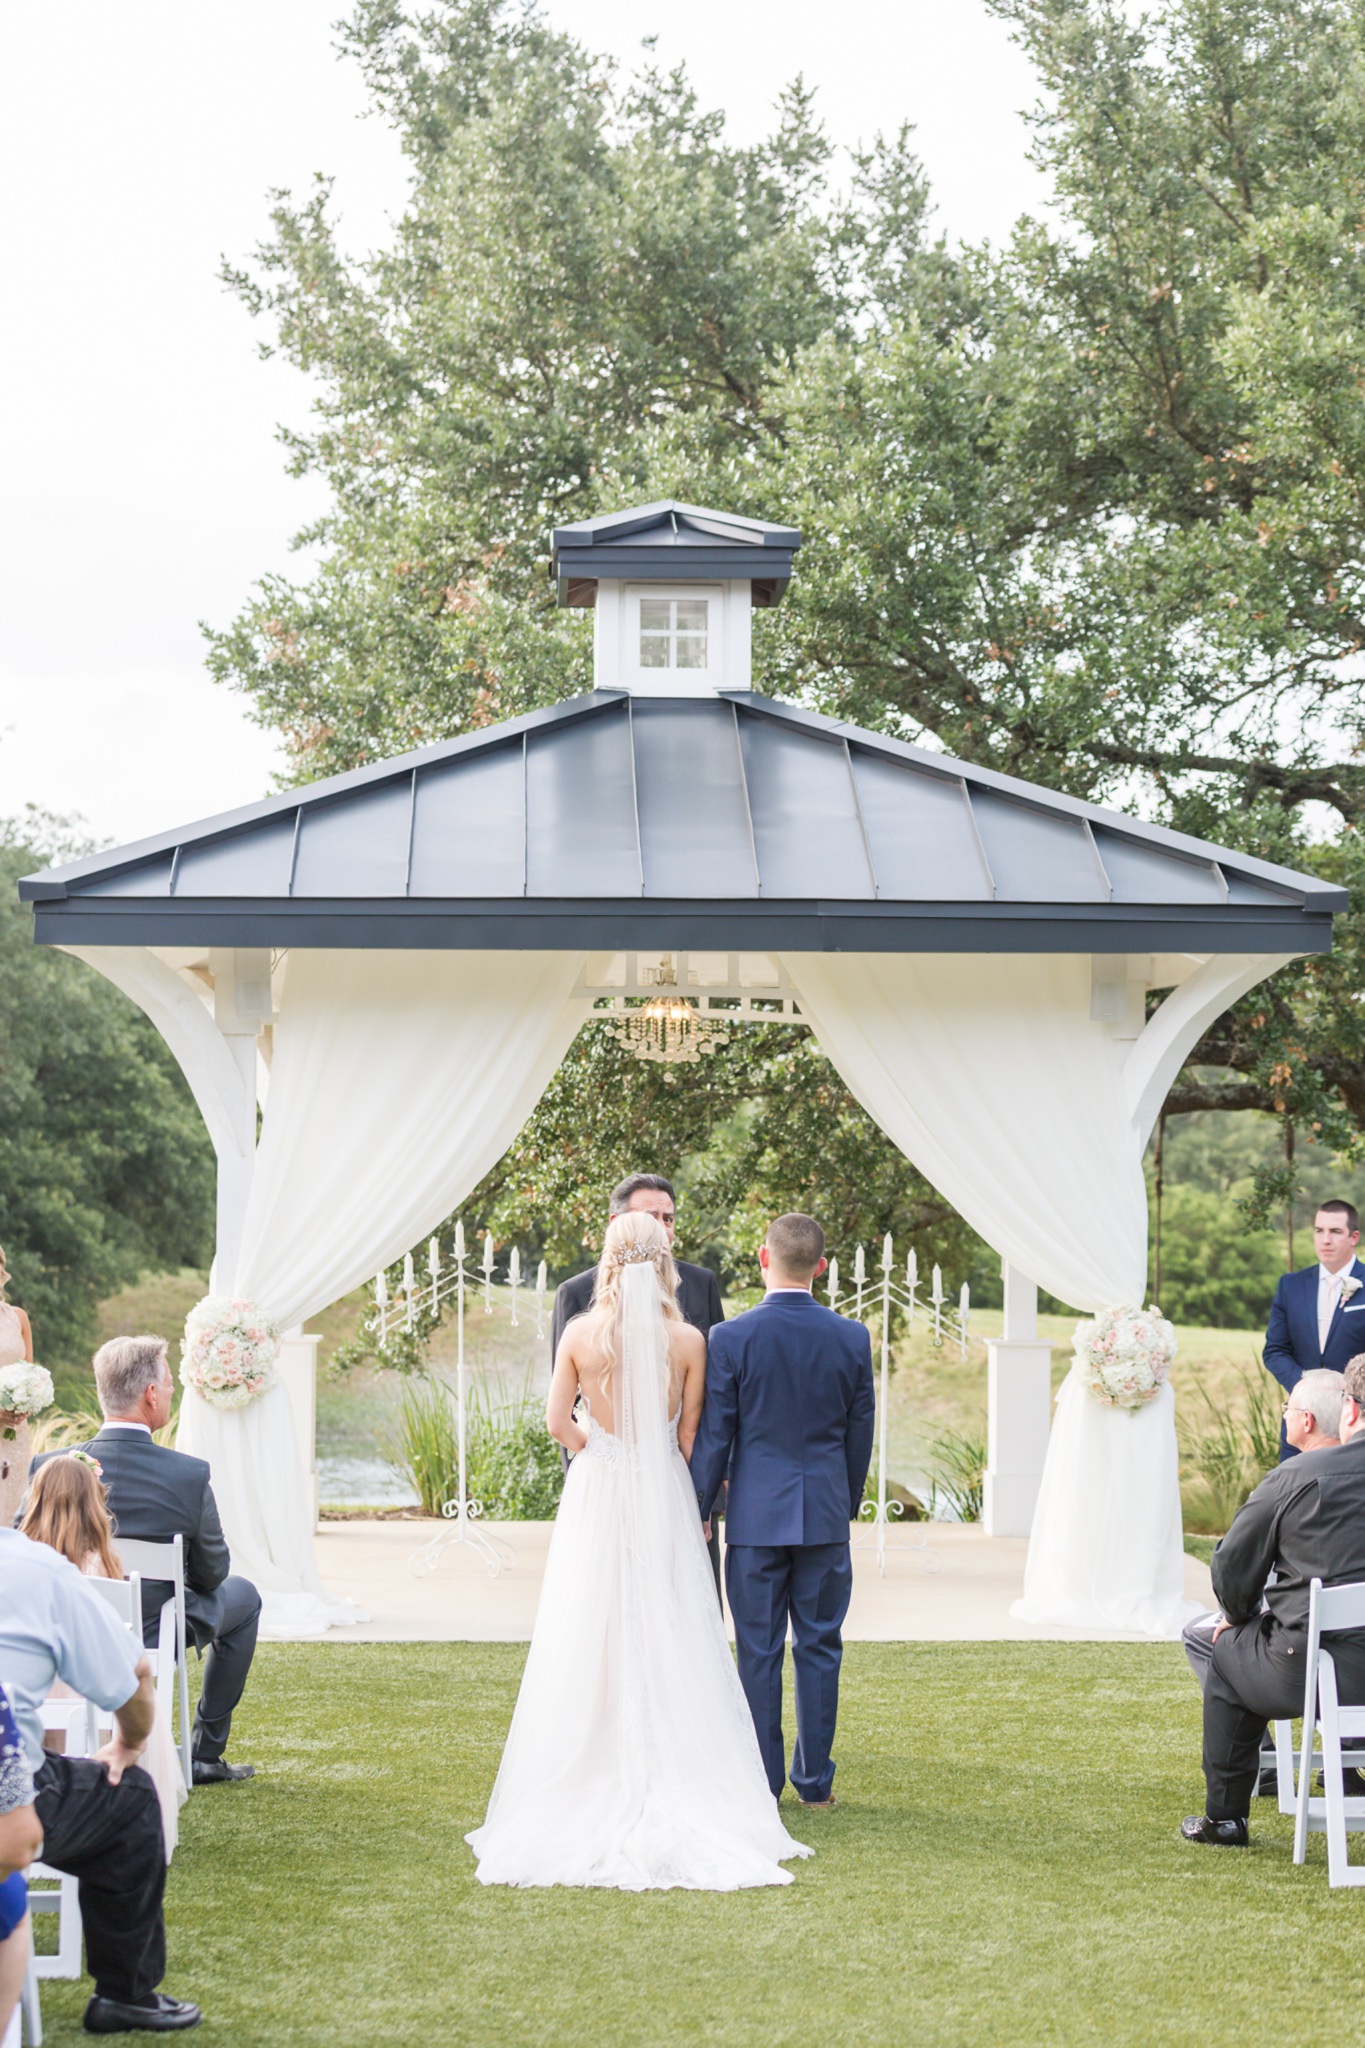 A Blush and Ivory Summer Wedding at Kendall Point in Boerne, TX by Dawn Elizabeth Studios, Boerne Wedding Photographer